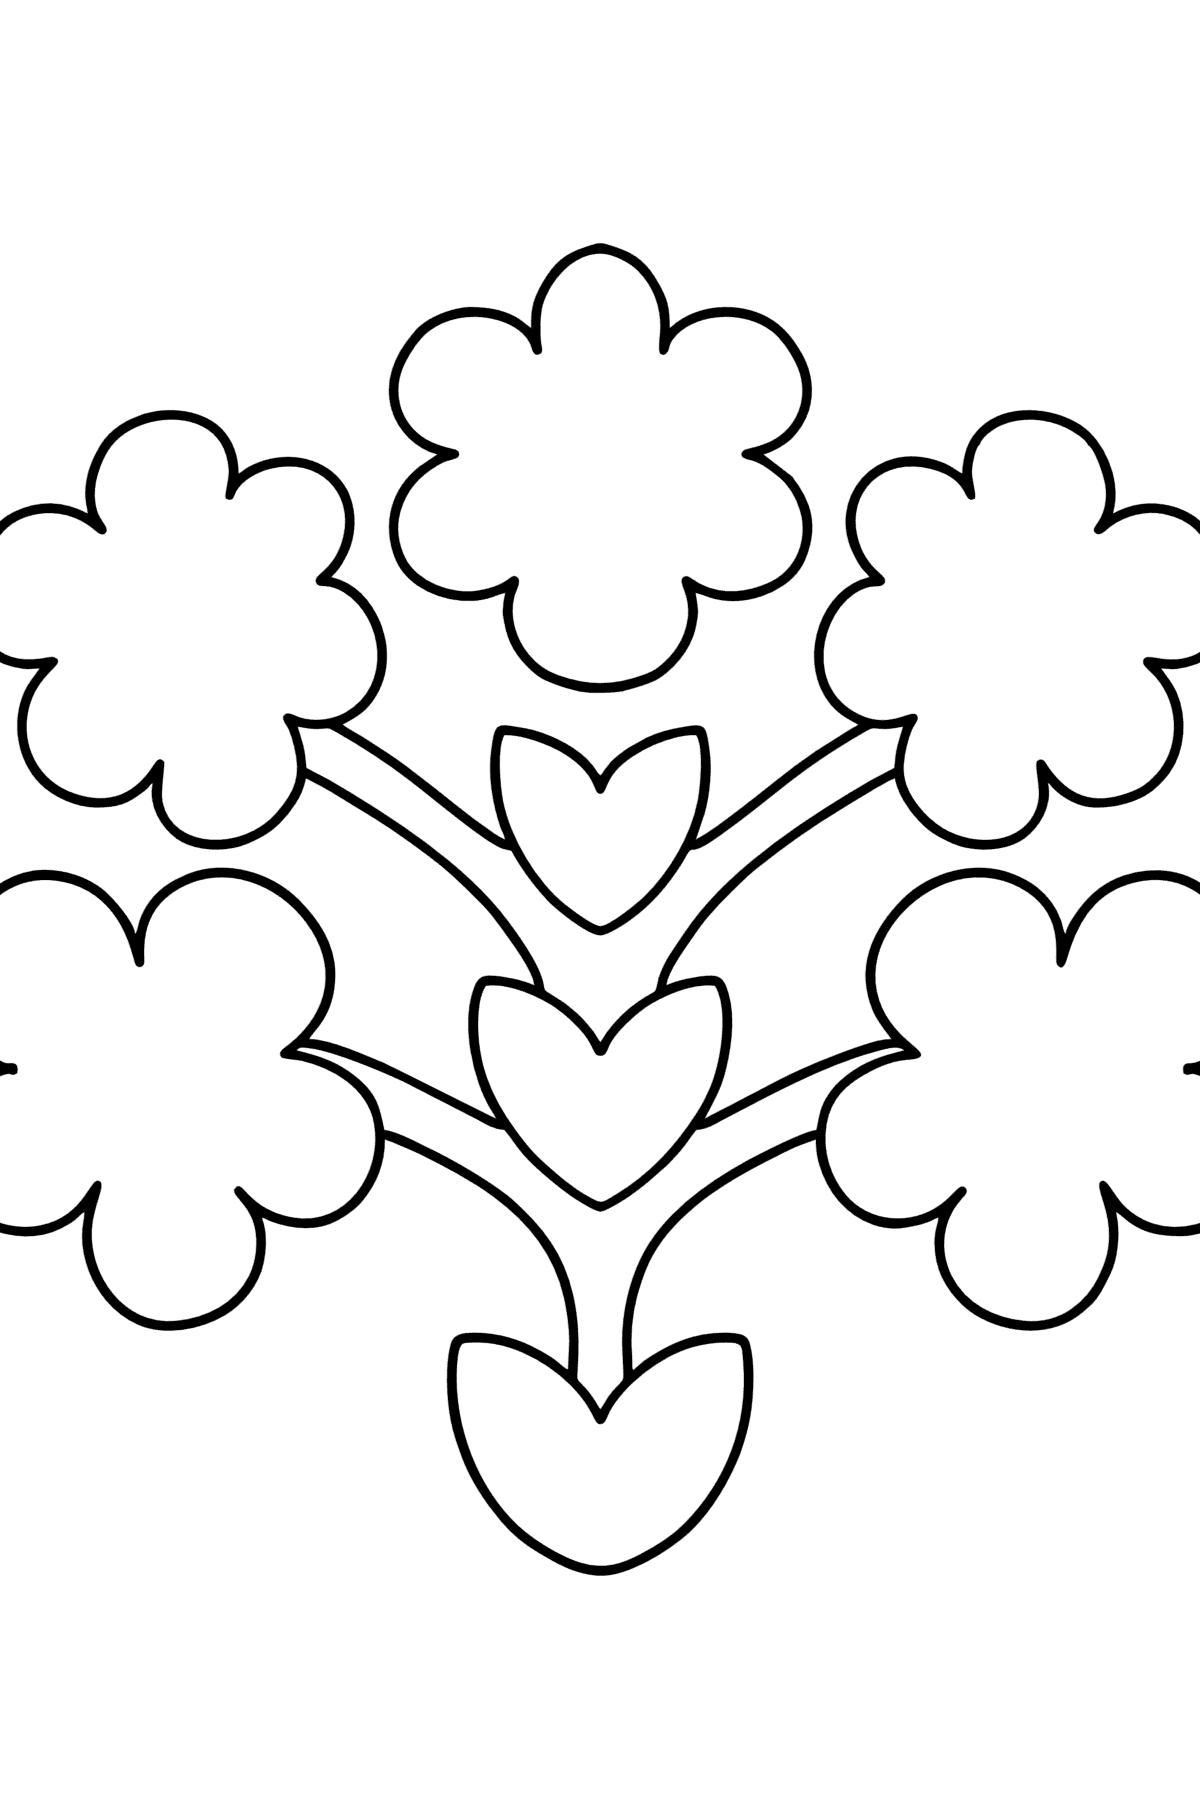 Boyama sayfası çiçek zentangle desen - Boyamalar çocuklar için